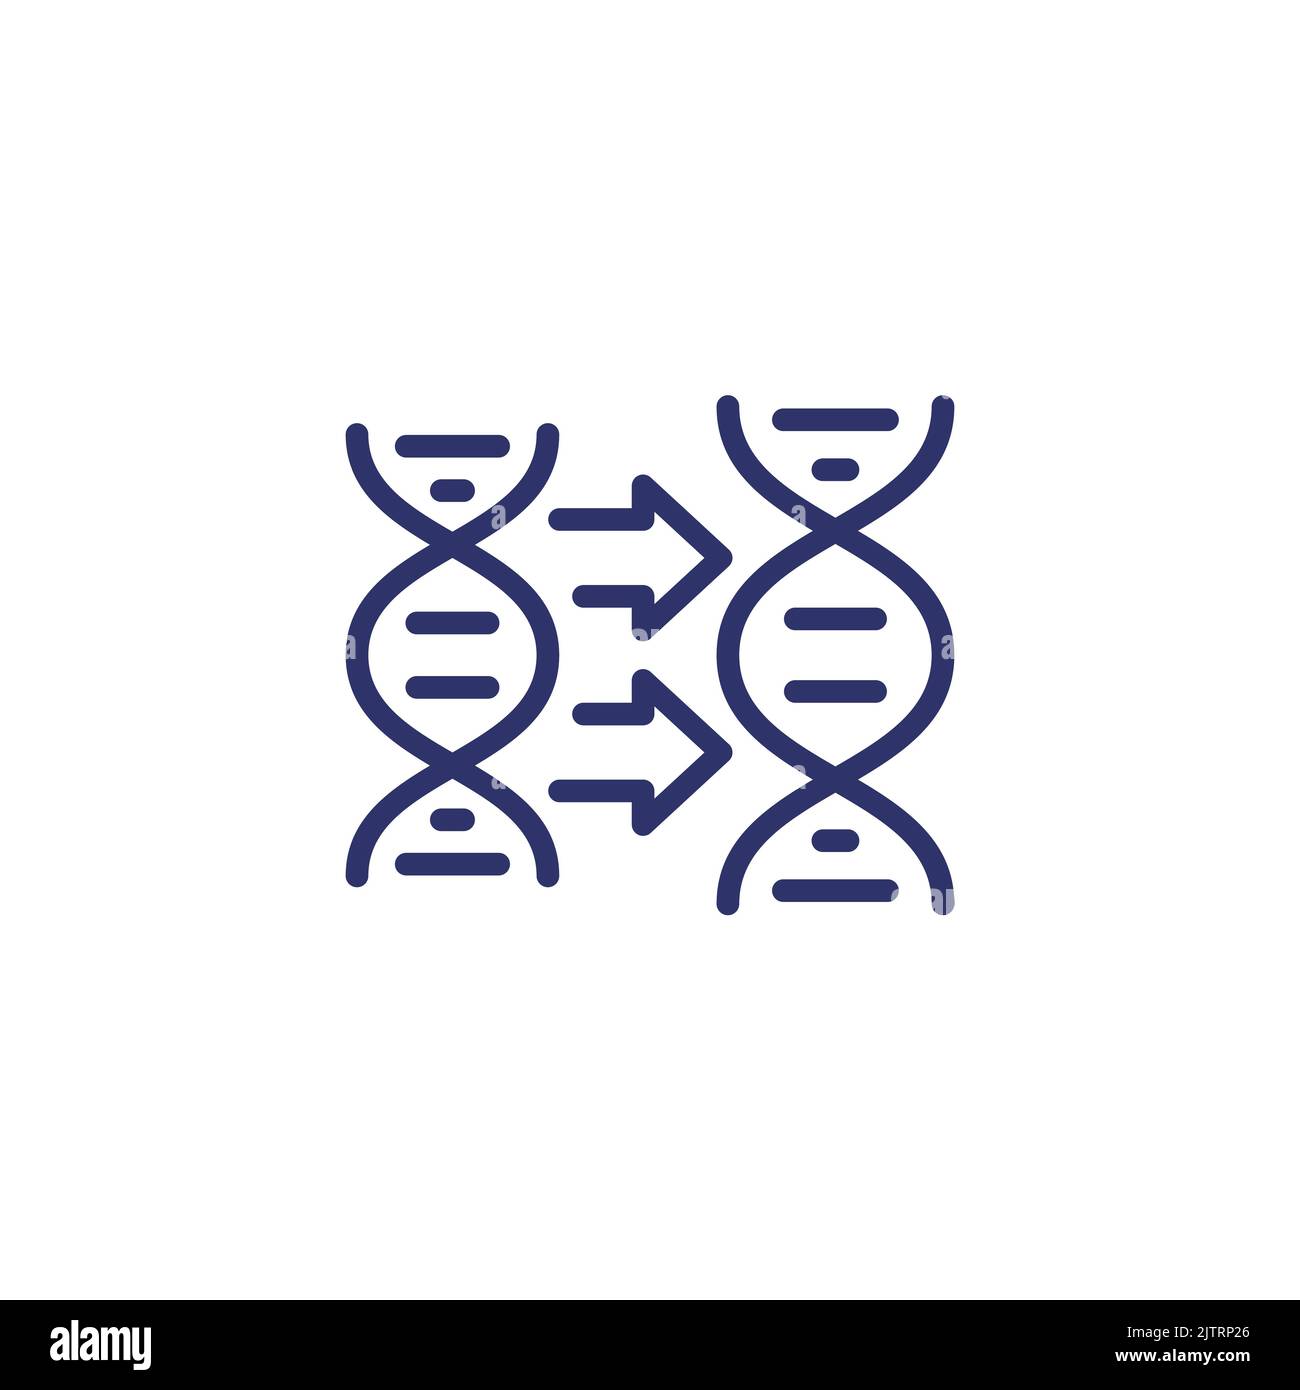 DNA replication icon, line vector Stock Vector